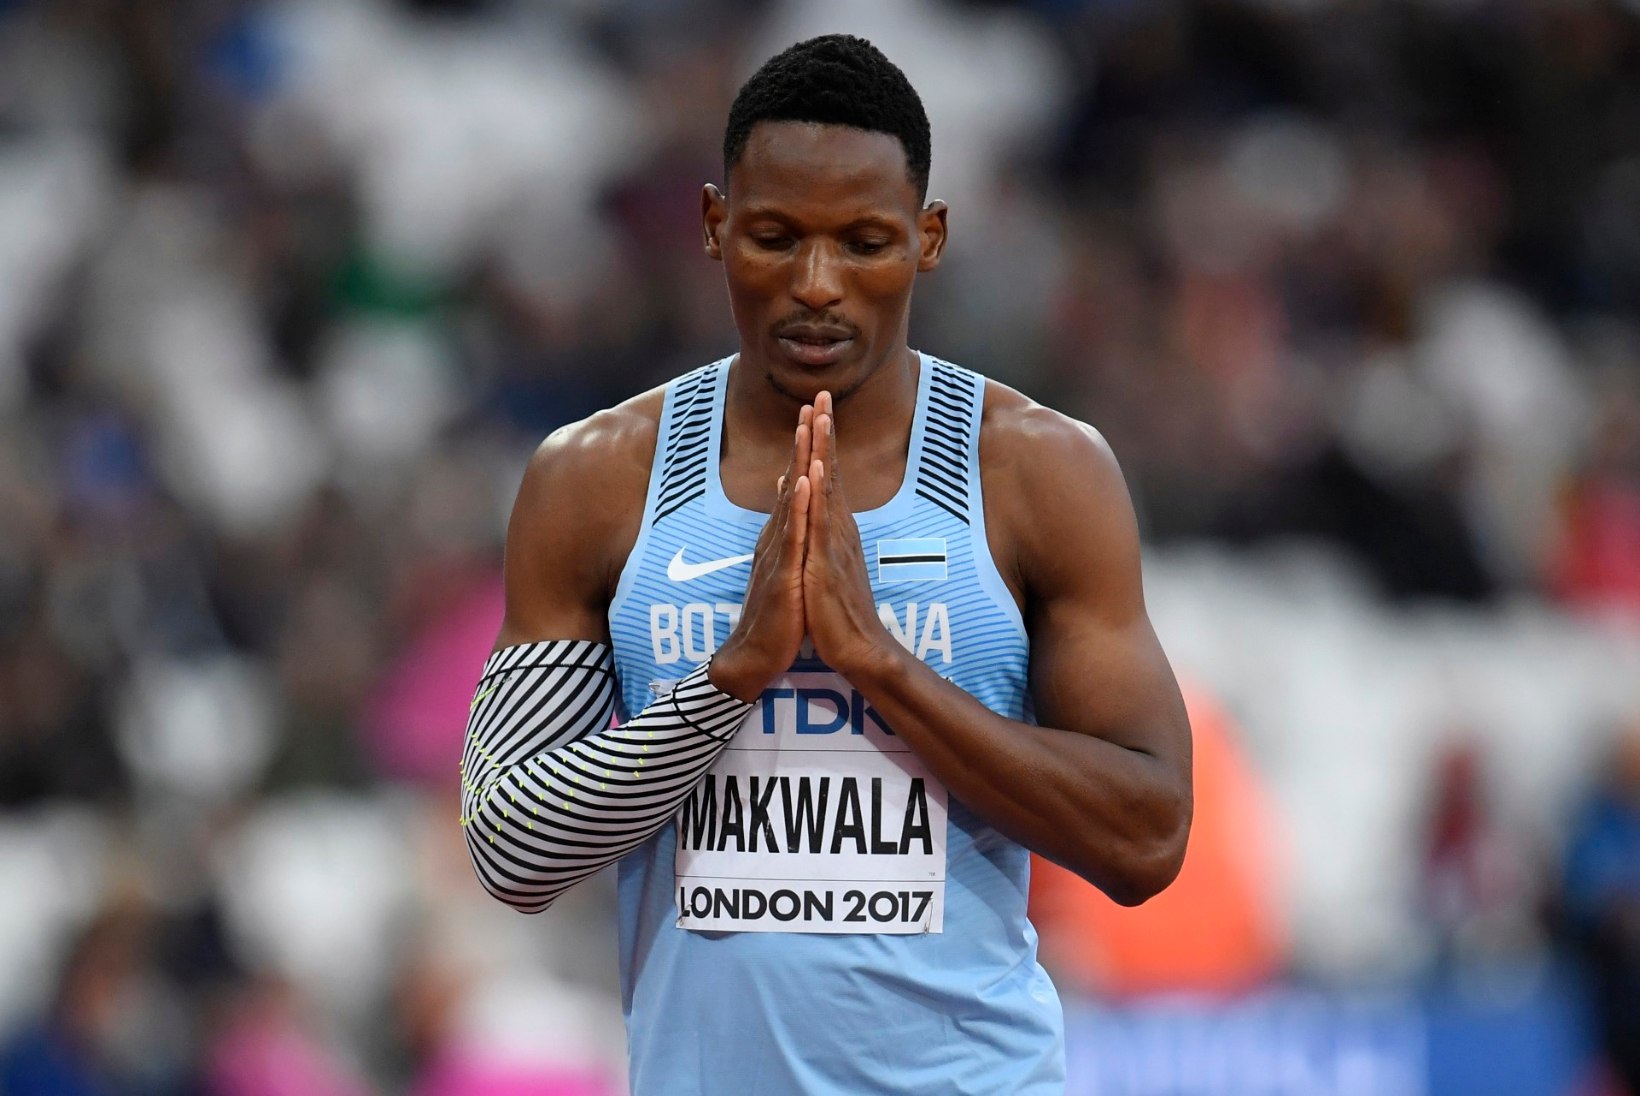 ÕL LONDONIS | GALERII: Olematu kõhuviiruse seljatanud Makwala murdis 200 m jooksus poolfinaali